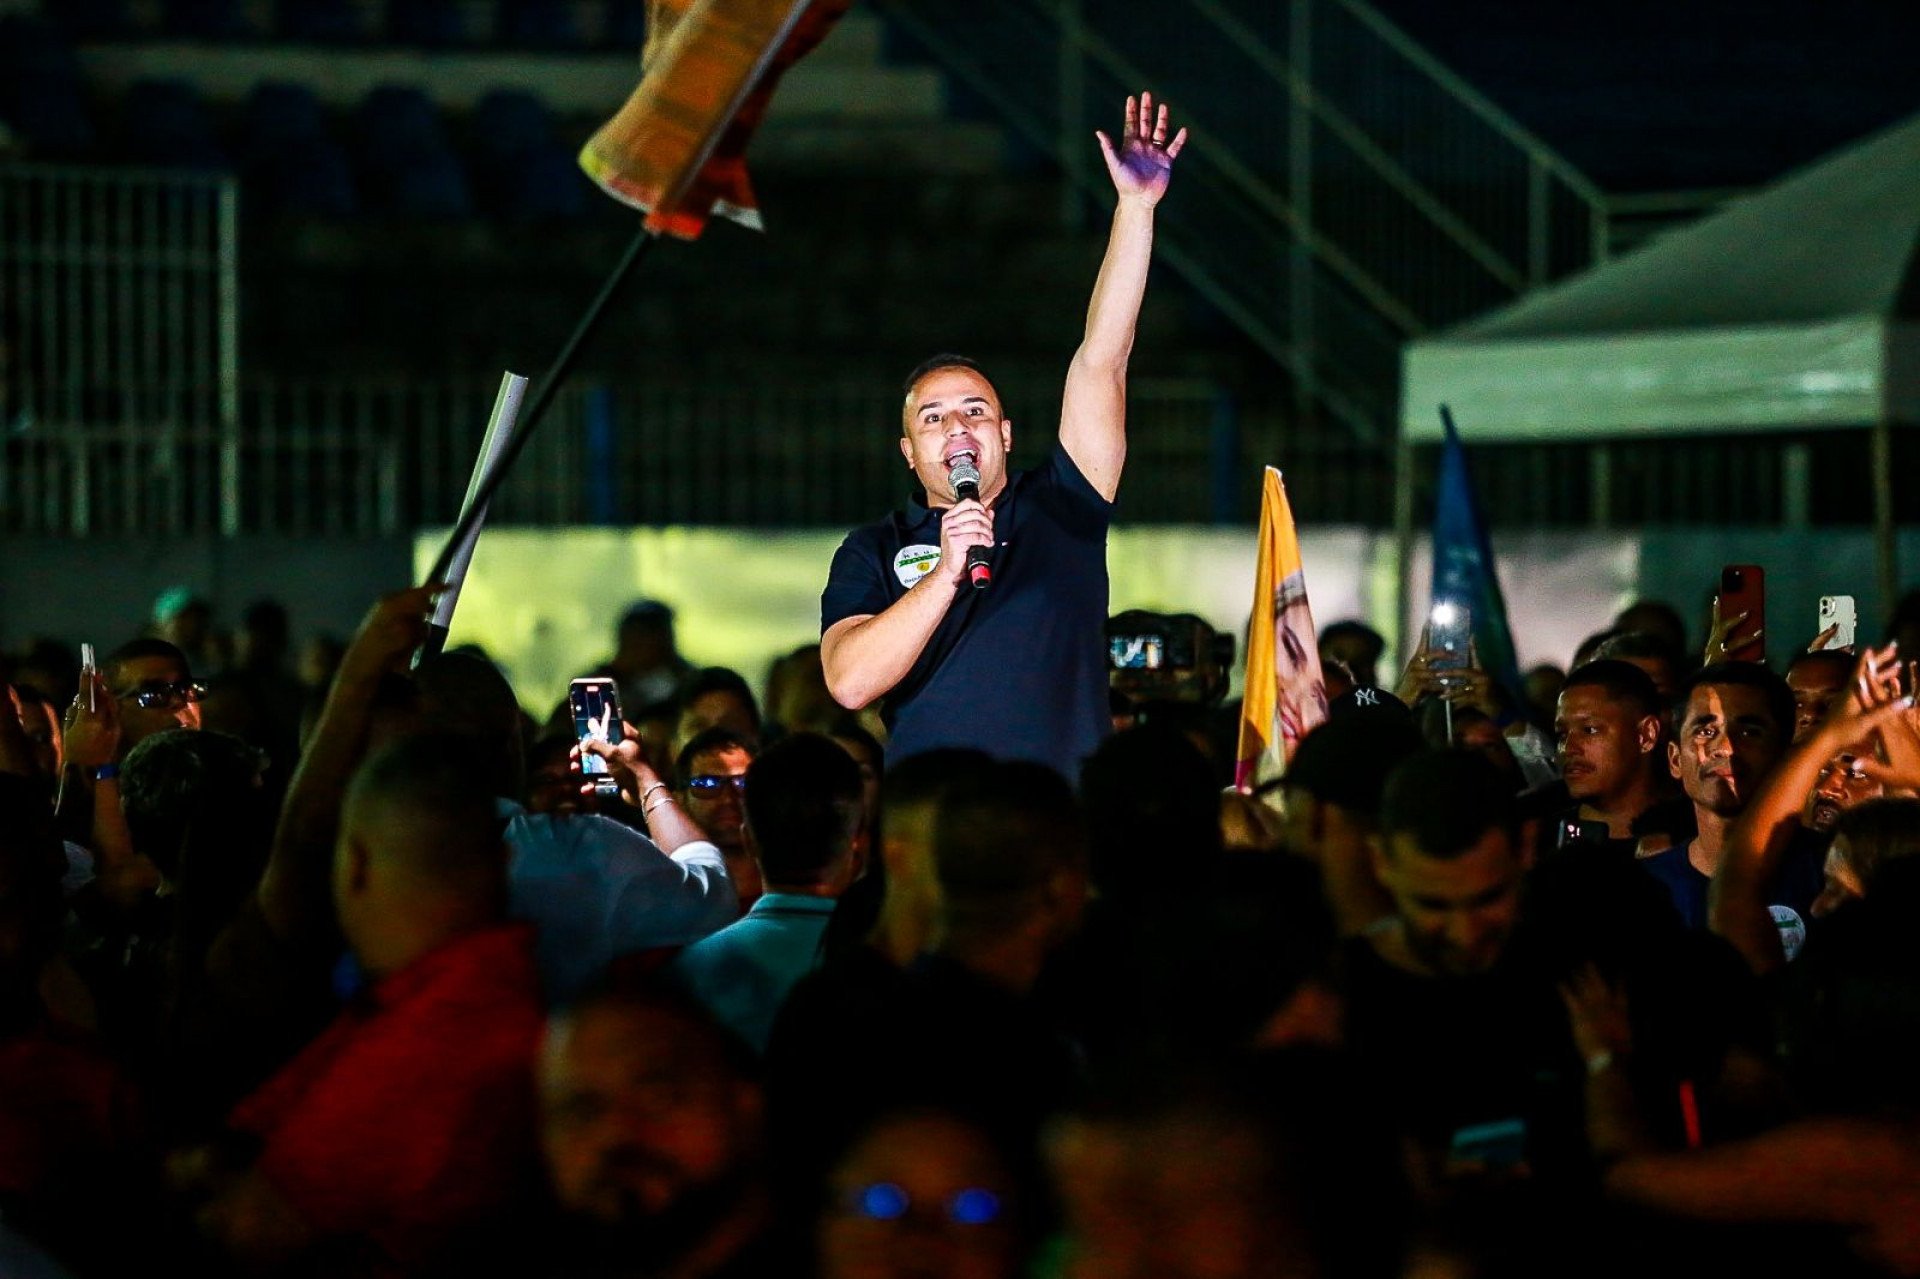 Matheus do Waguinho inicia discurso no meio da multidão com mais de 30 mil pessoas em Heliópolis - Divulgação / Rafael Barreto